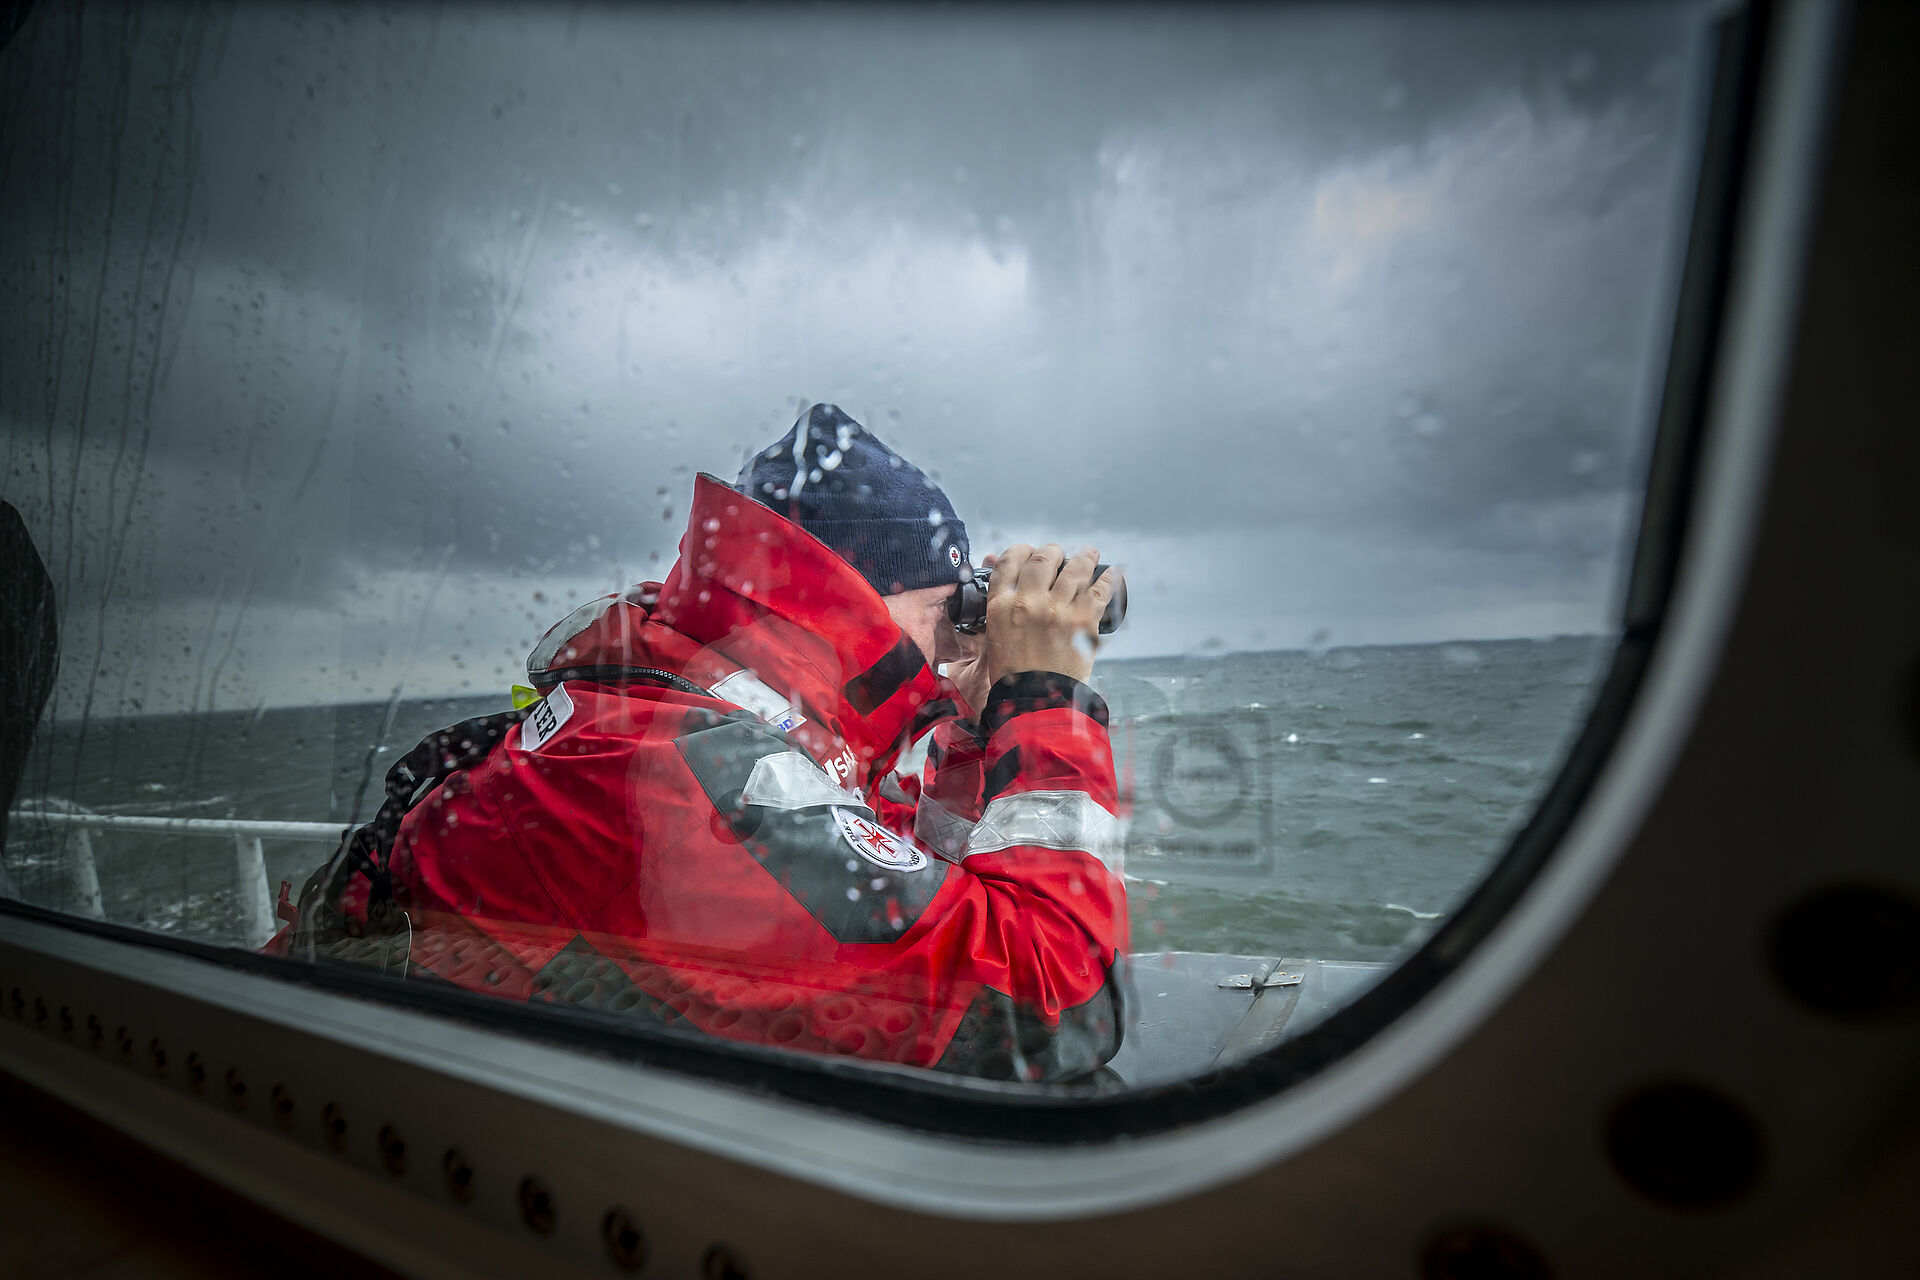 Bei regnereischem, schlechten Wetter steht ein Seenotretter mit Mütze auf einem Ausguck und blickt mit einem Fernglas über die aufgewühlte See.